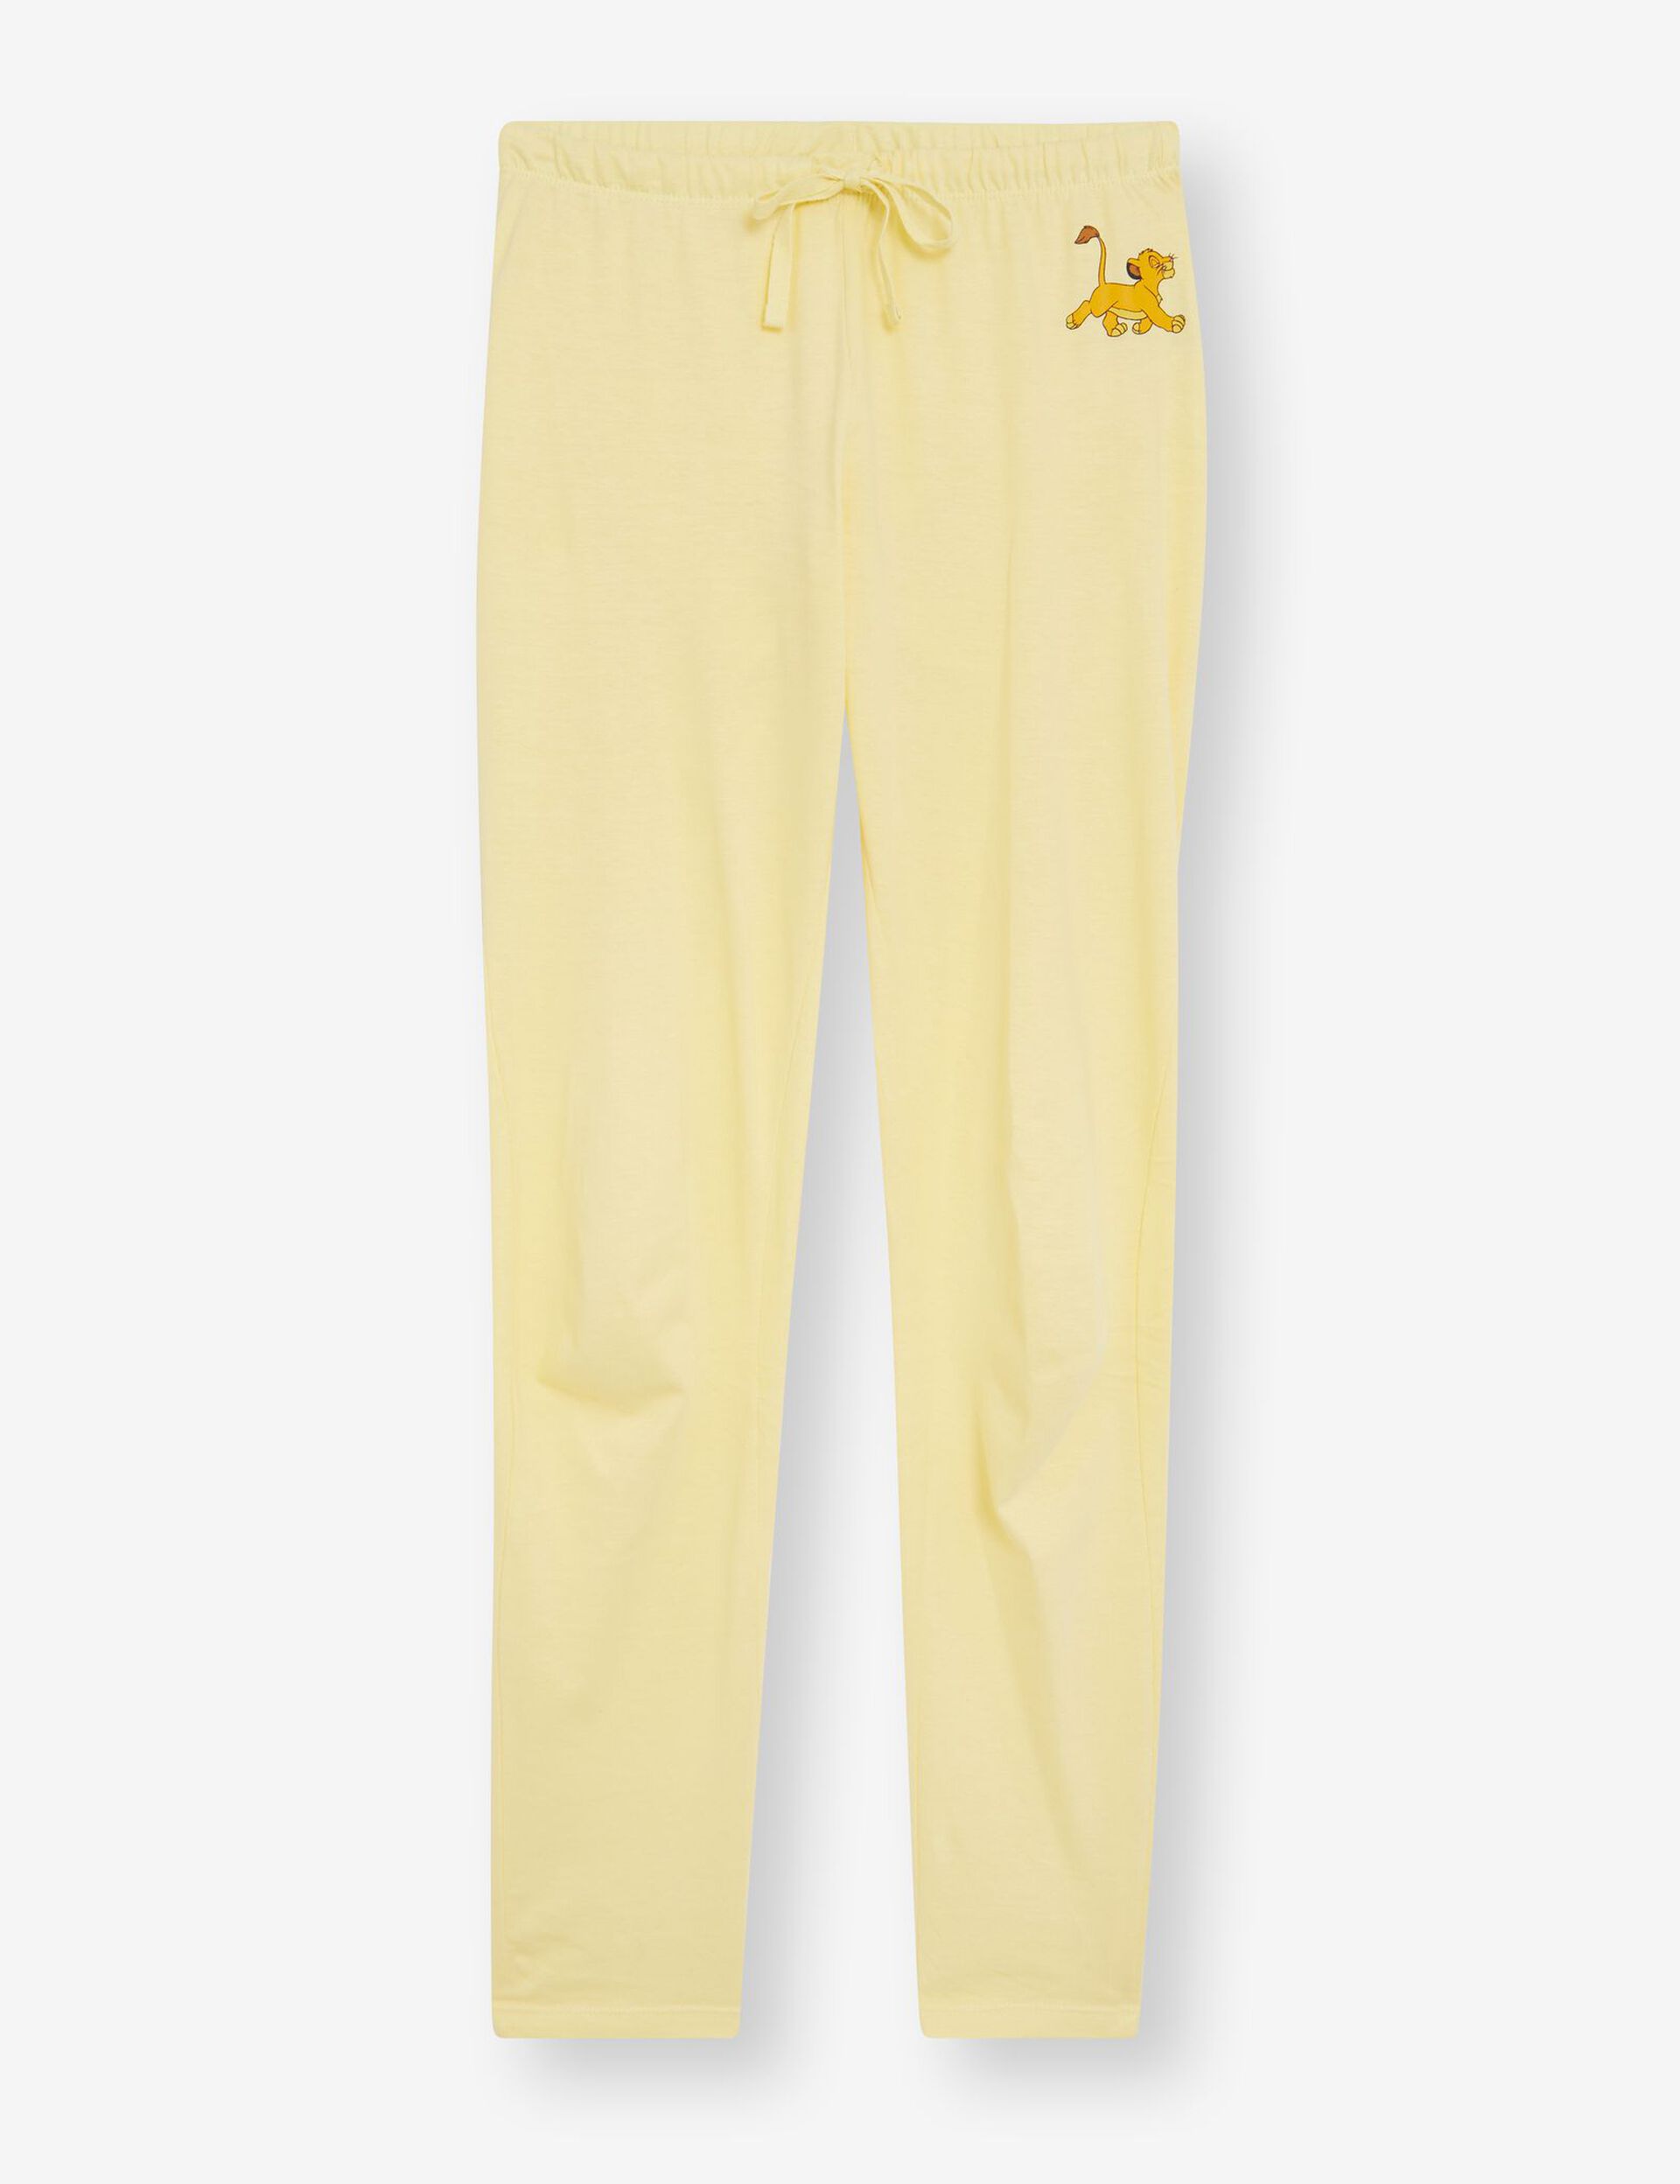 Pyjama Roi Lion Simba jaune